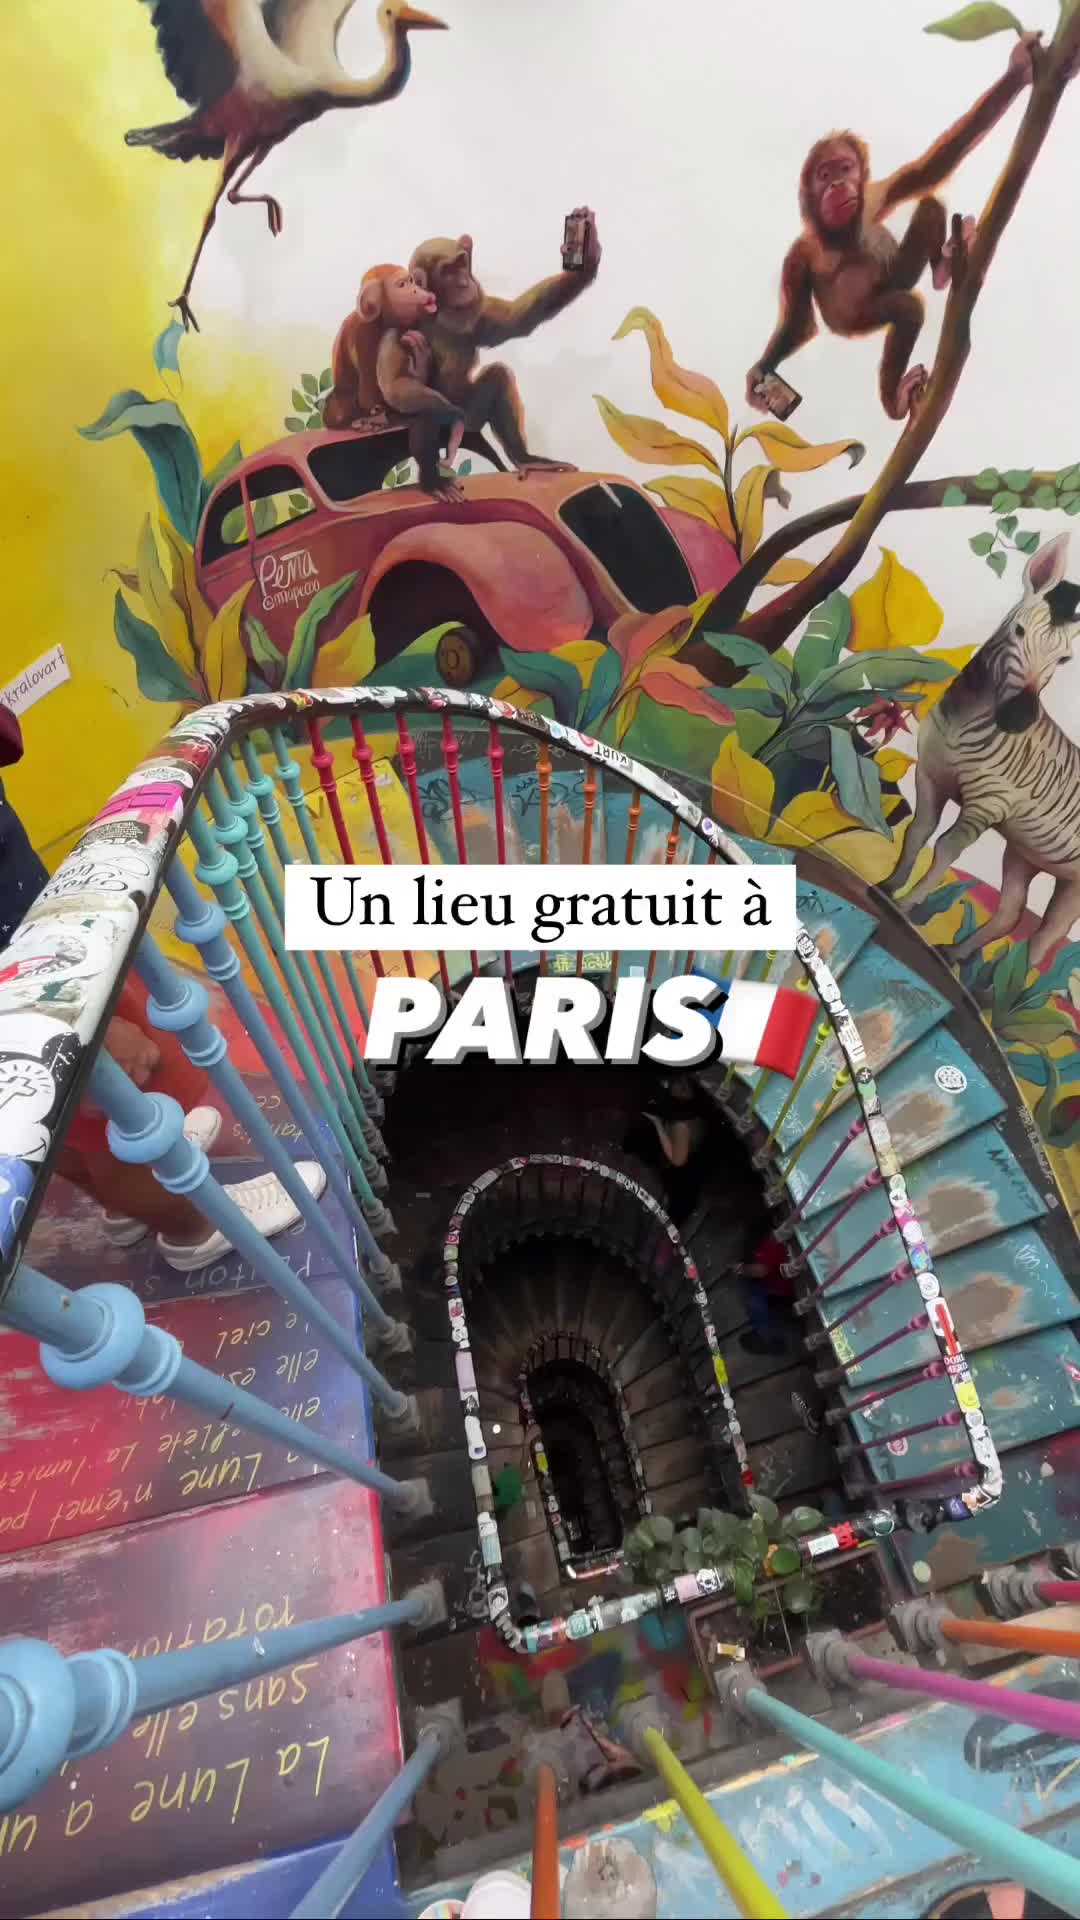 Discover 59 Rivoli: Free Art Venue in Paris 🇫🇷